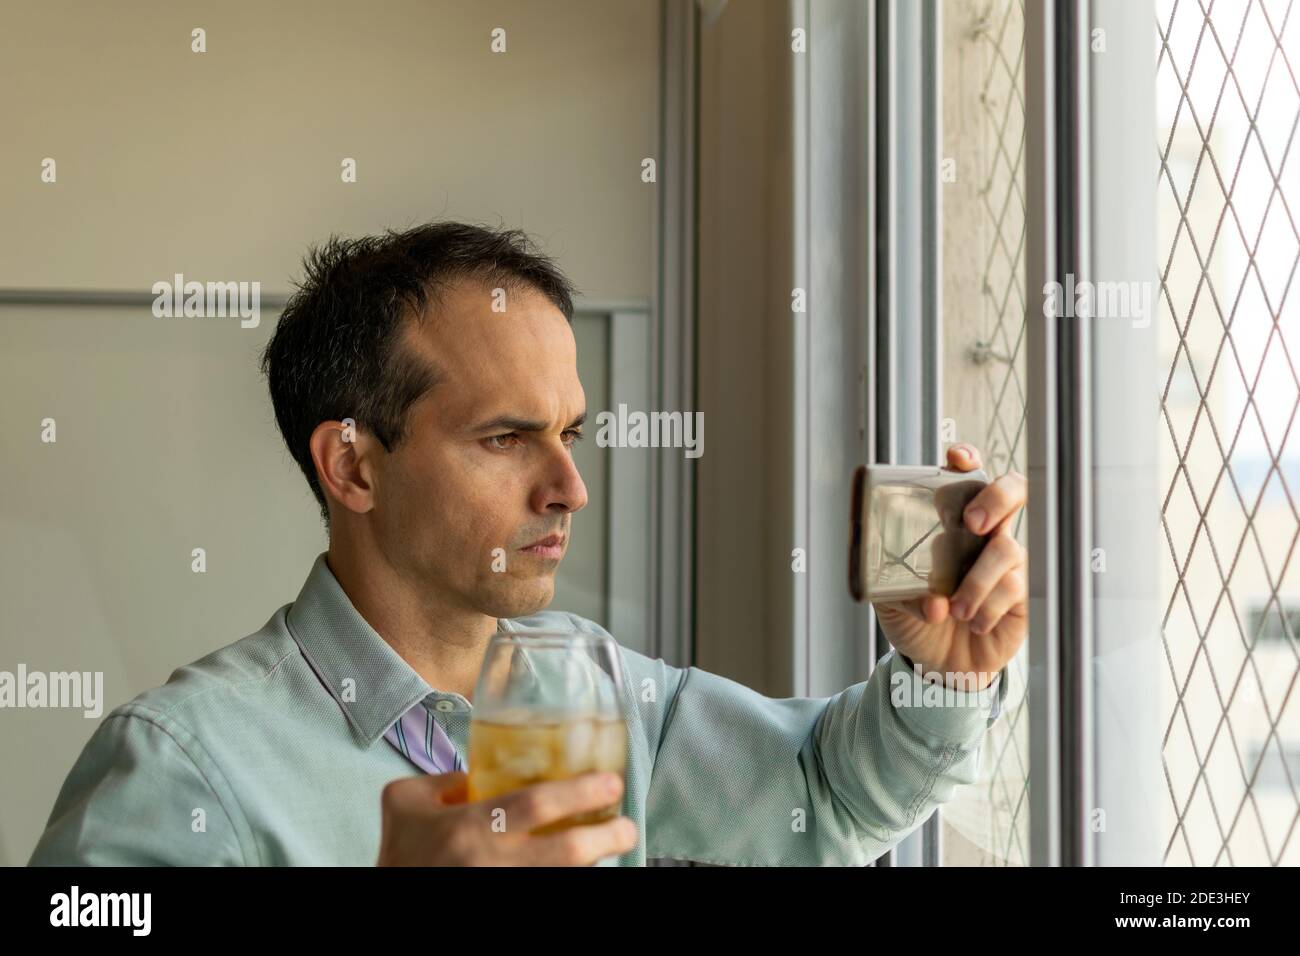 uomo di 44 anni, davanti a una finestra, che prende un whisky e guarda un video sul suo smartphone. Foto Stock